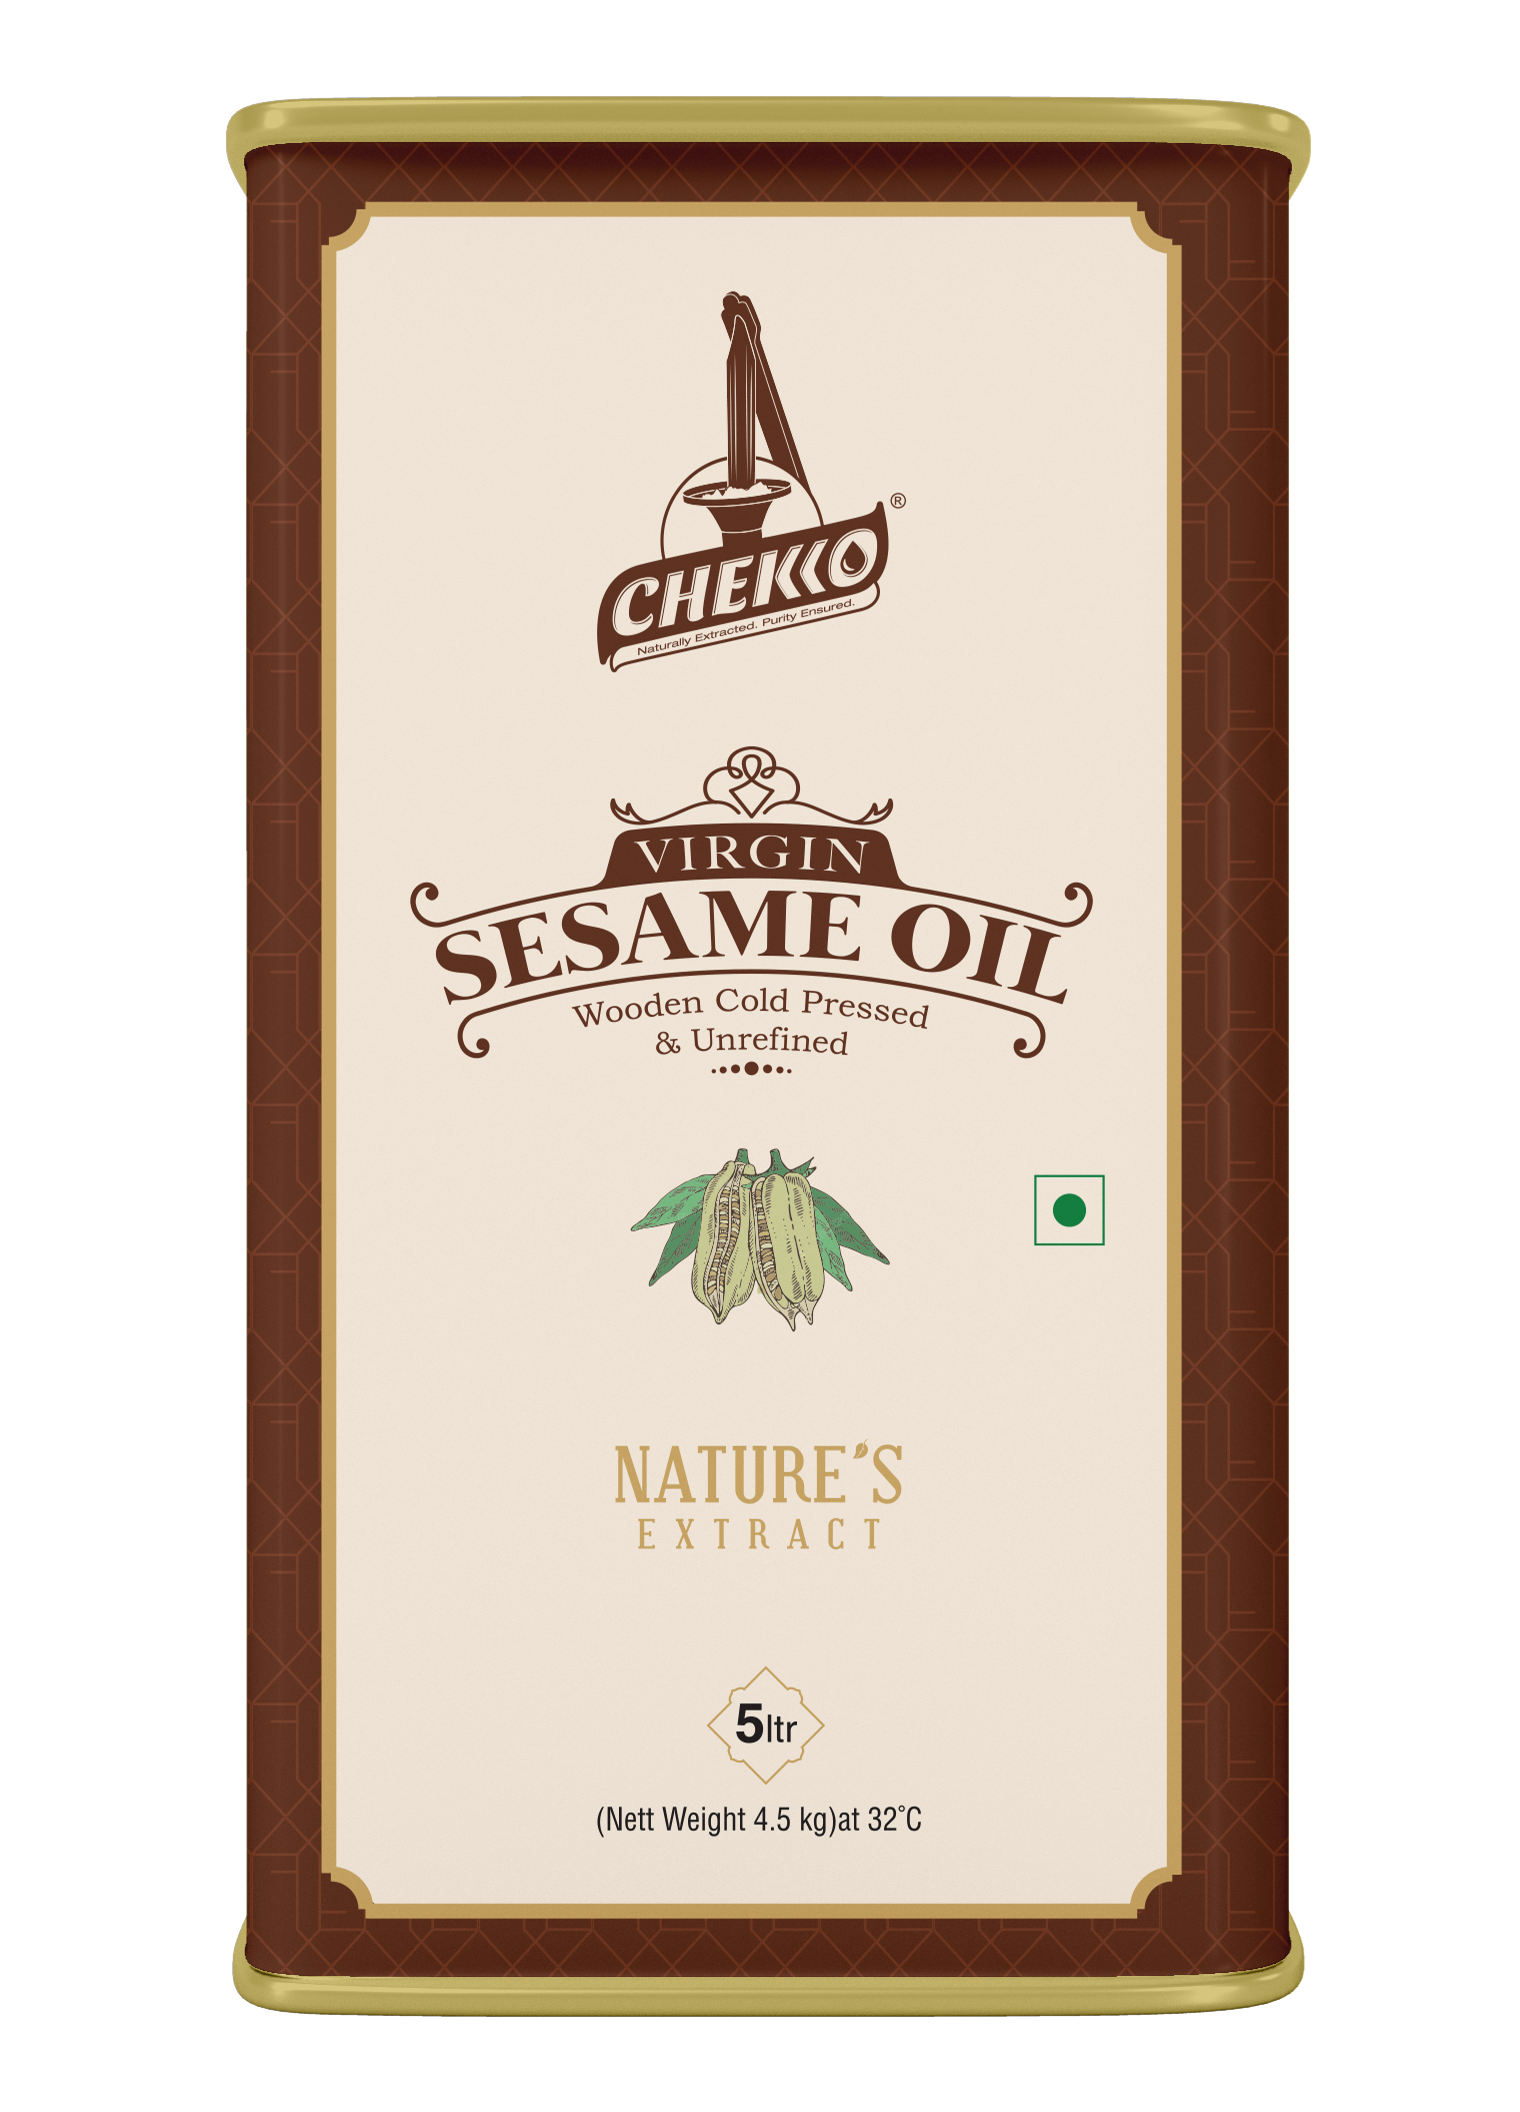 Chekko Cold Pressed Virgin Sesame Oil